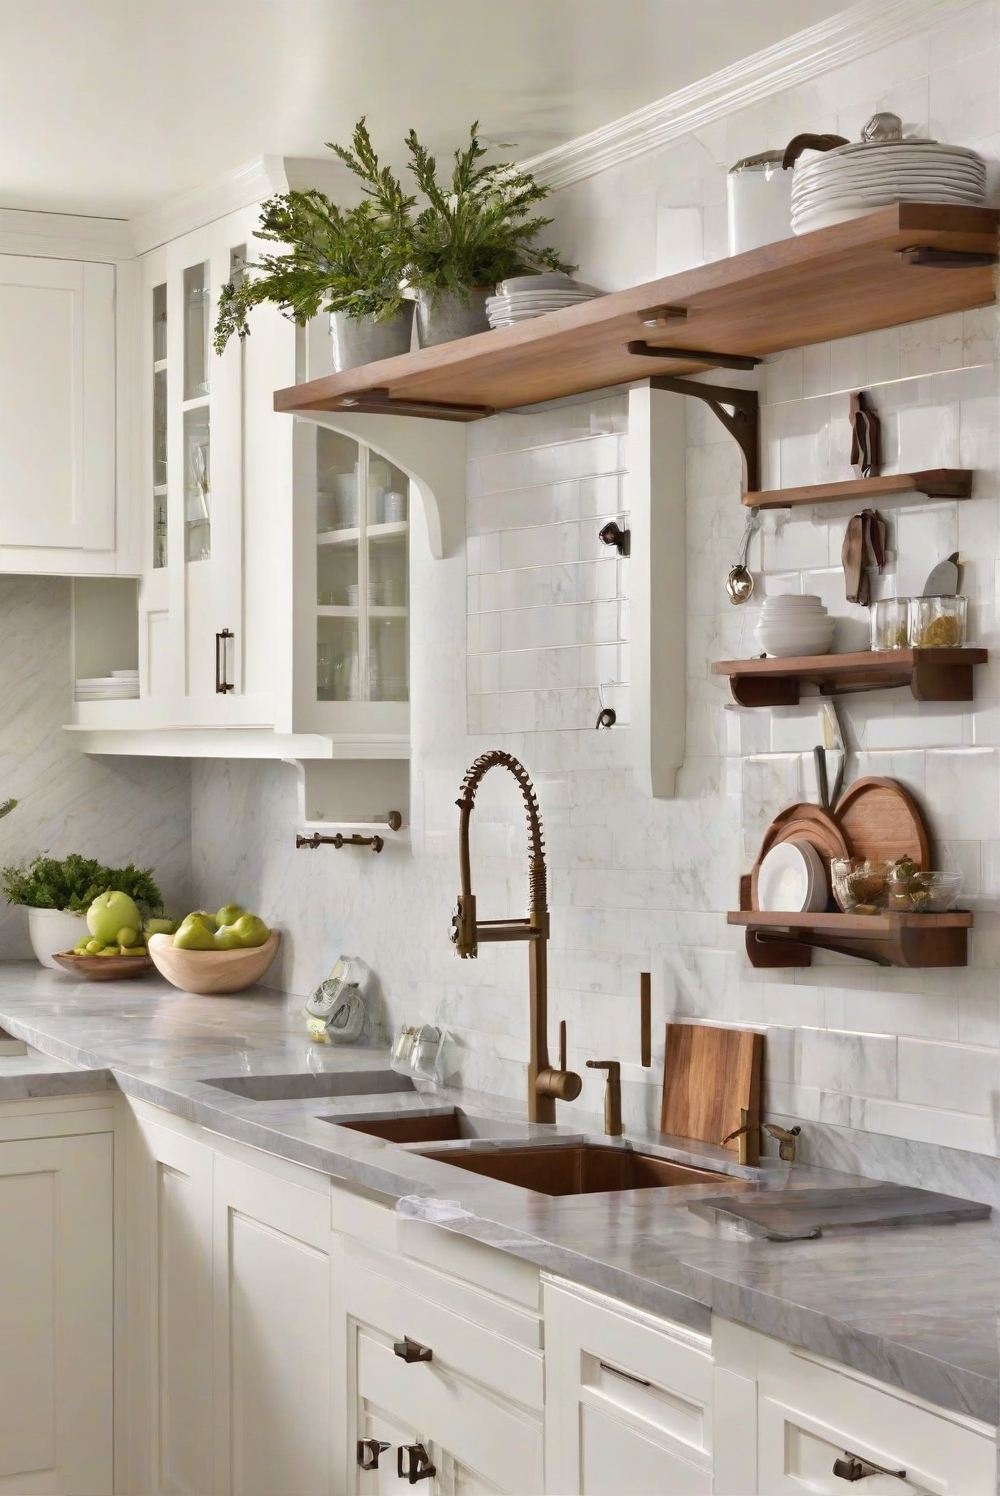 kitchen hardware, cabinet hardware, kitchen design, kitchen renovation, kitchen remodeling, kitchen accessories, kitchen decor